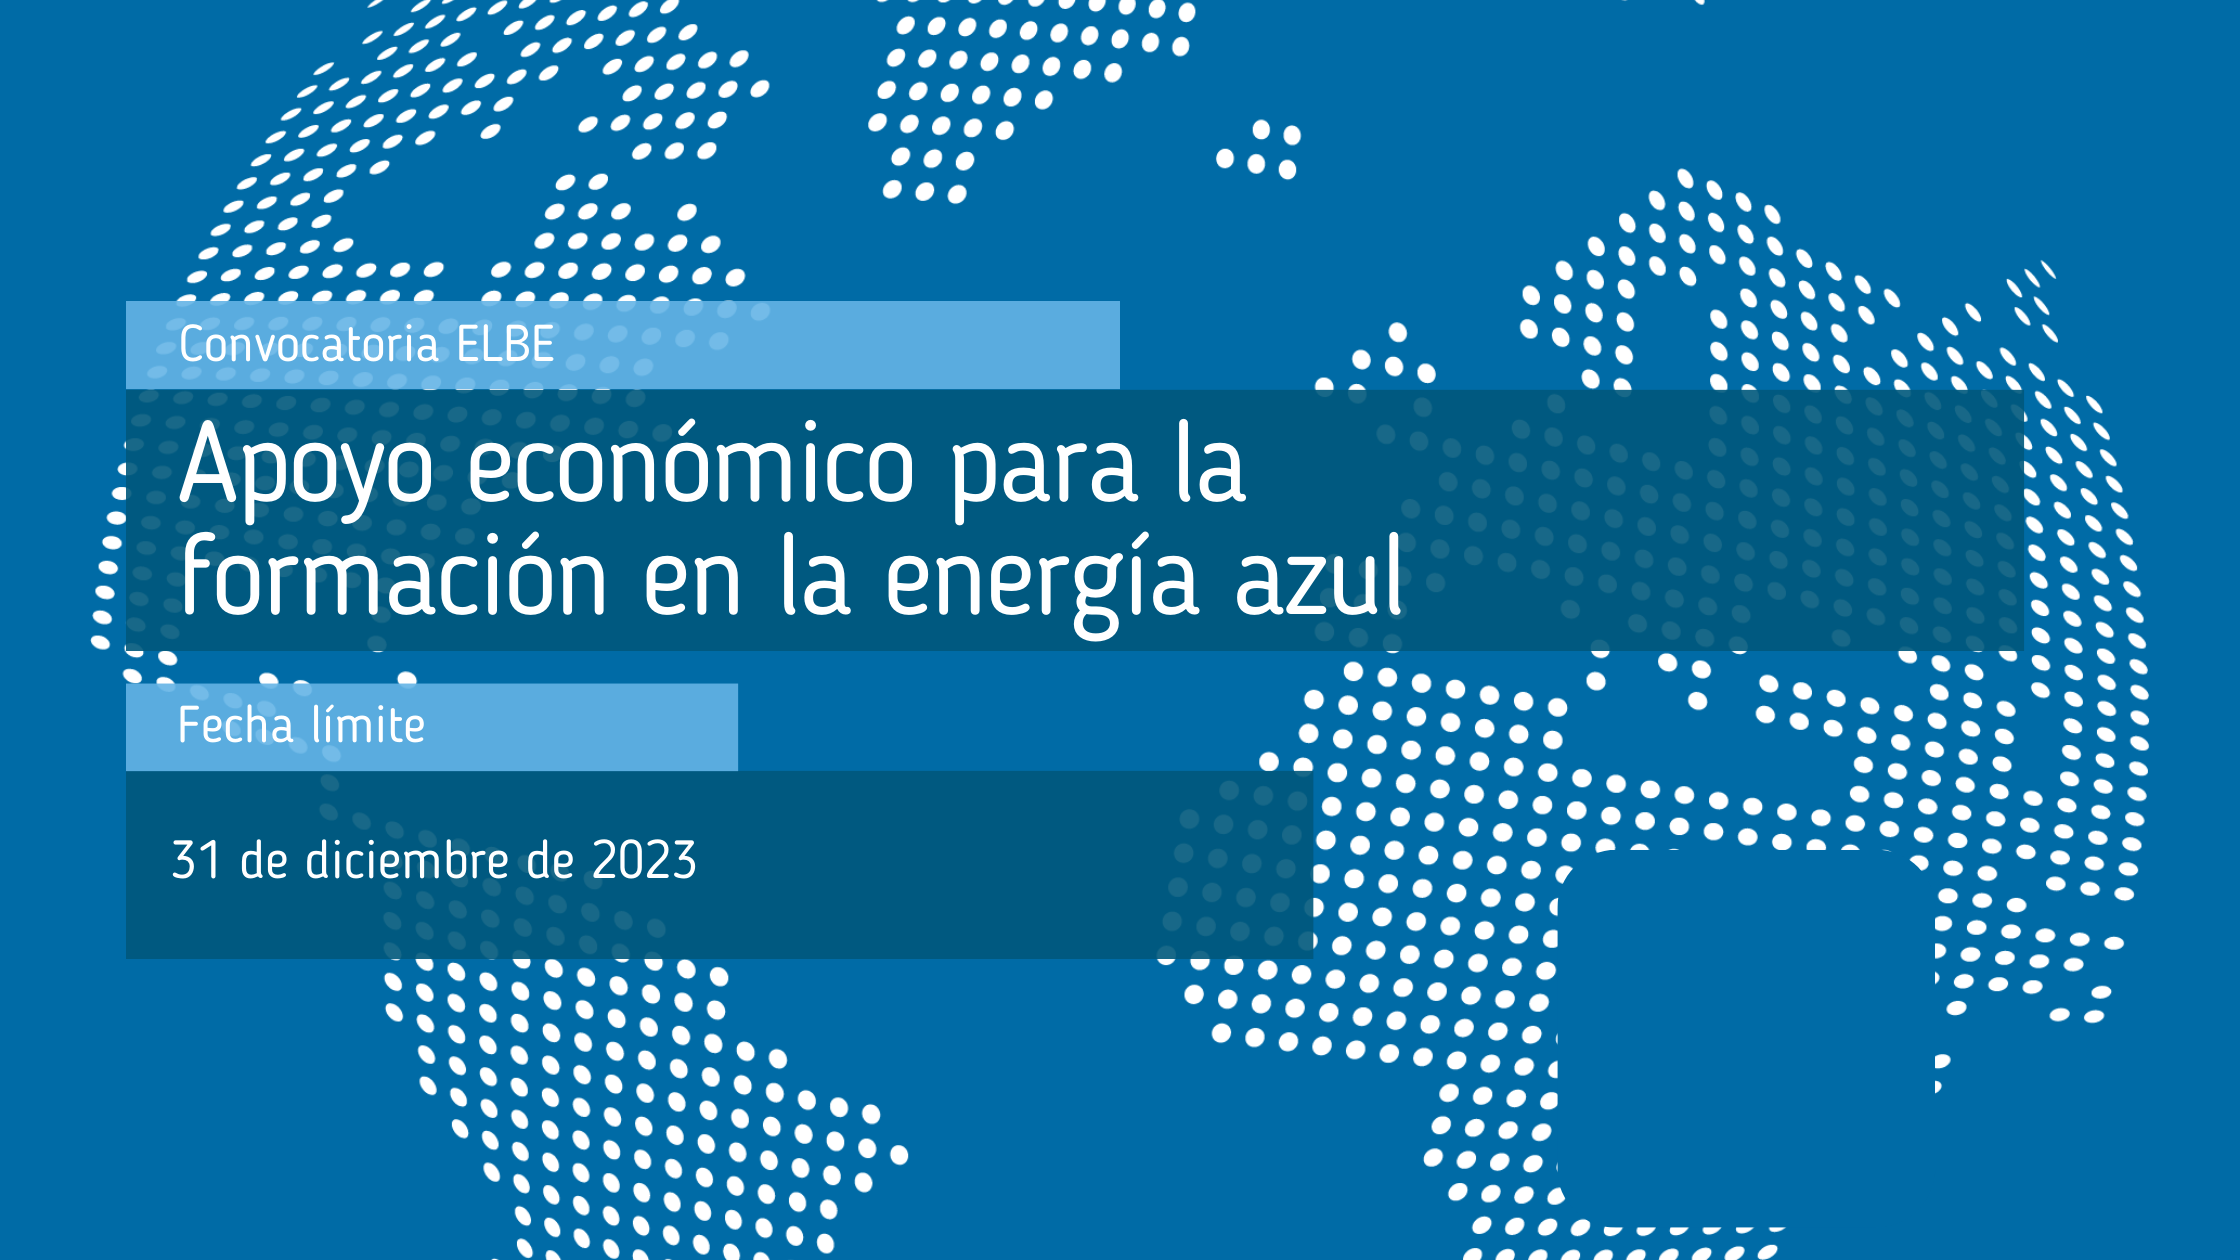 Convocatoria_de_apoyo_económico_para_la_formación_en_la_energía_azul